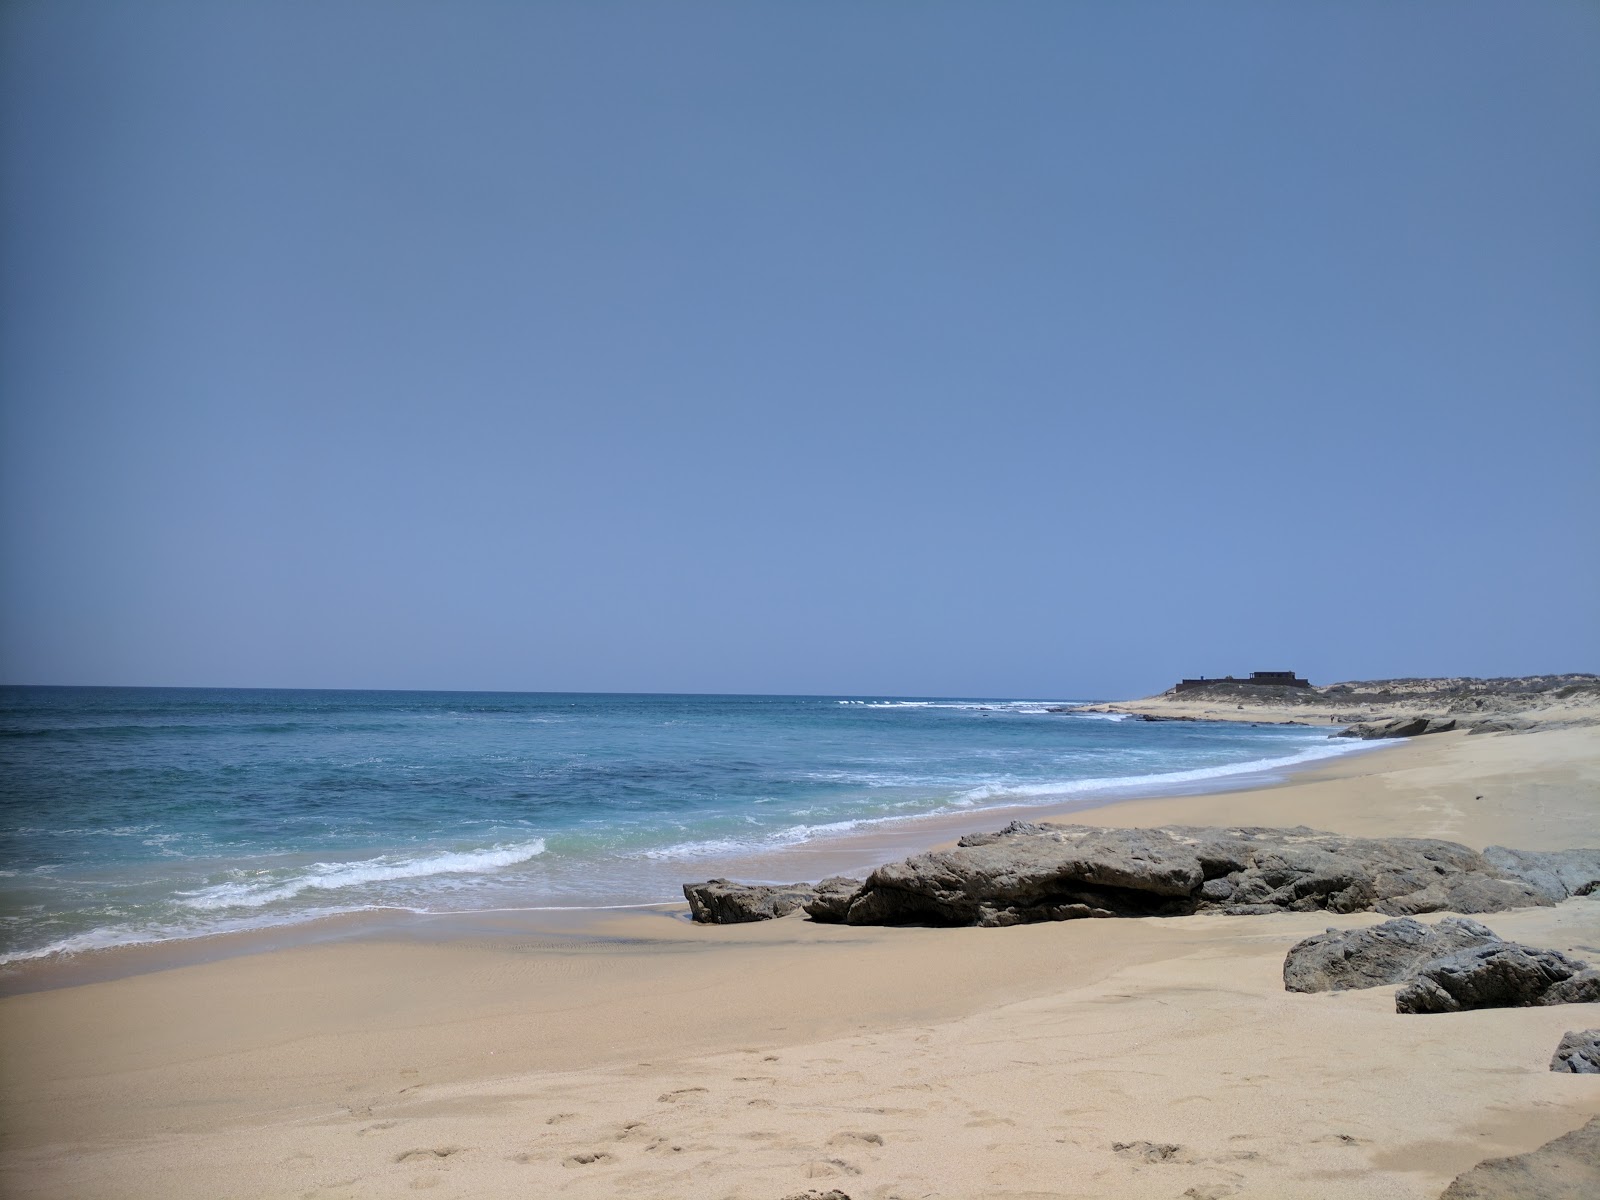 Foto von Playa Santa Agueda mit heller sand Oberfläche